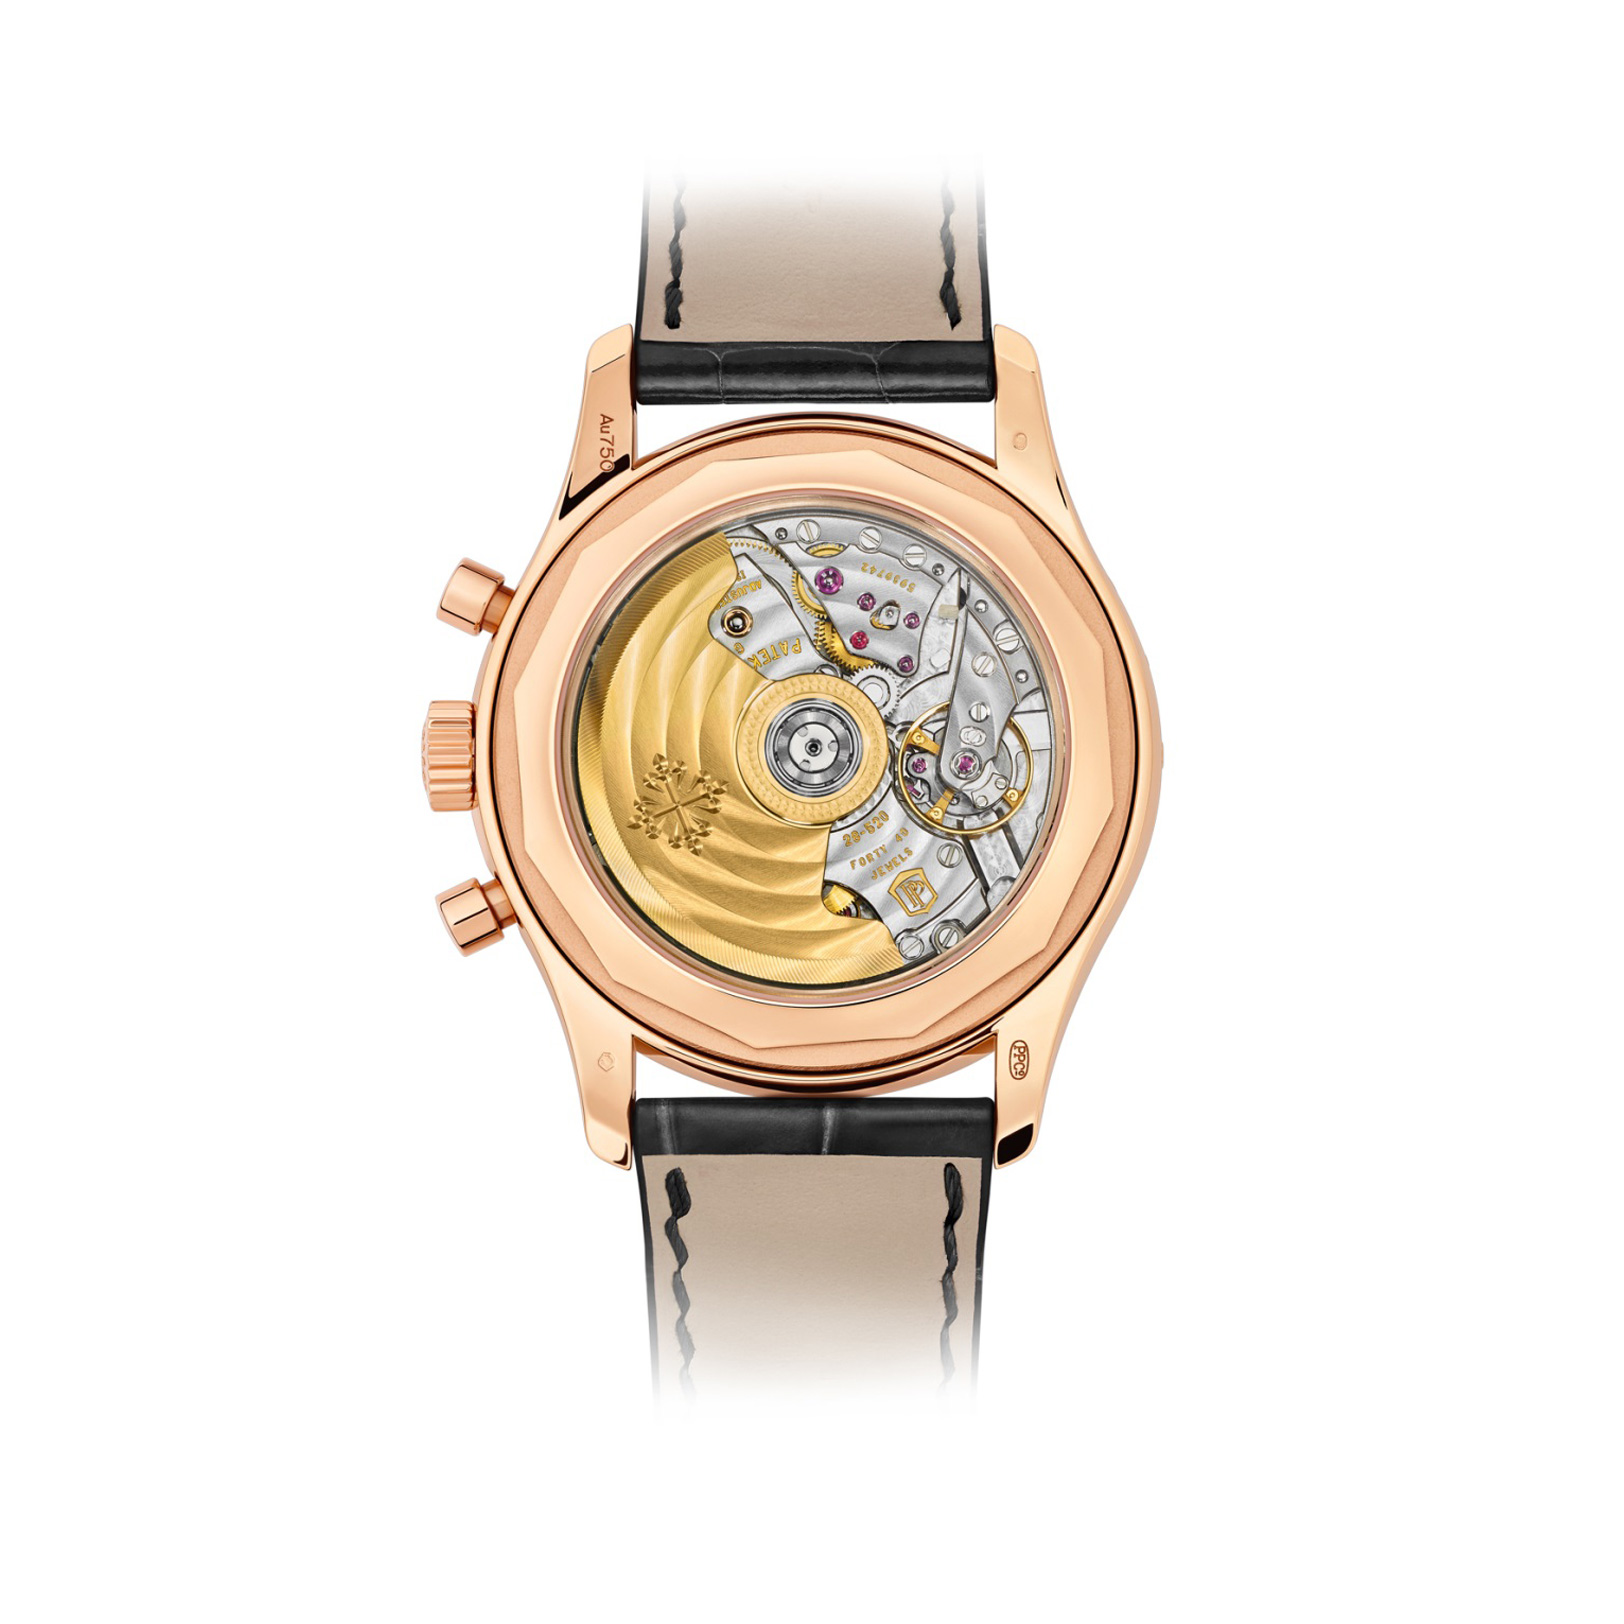 นาฬิกาปาเต็ก ฟิลิปป์ Complications Diamond Rose Gold Chronograph gallery 1